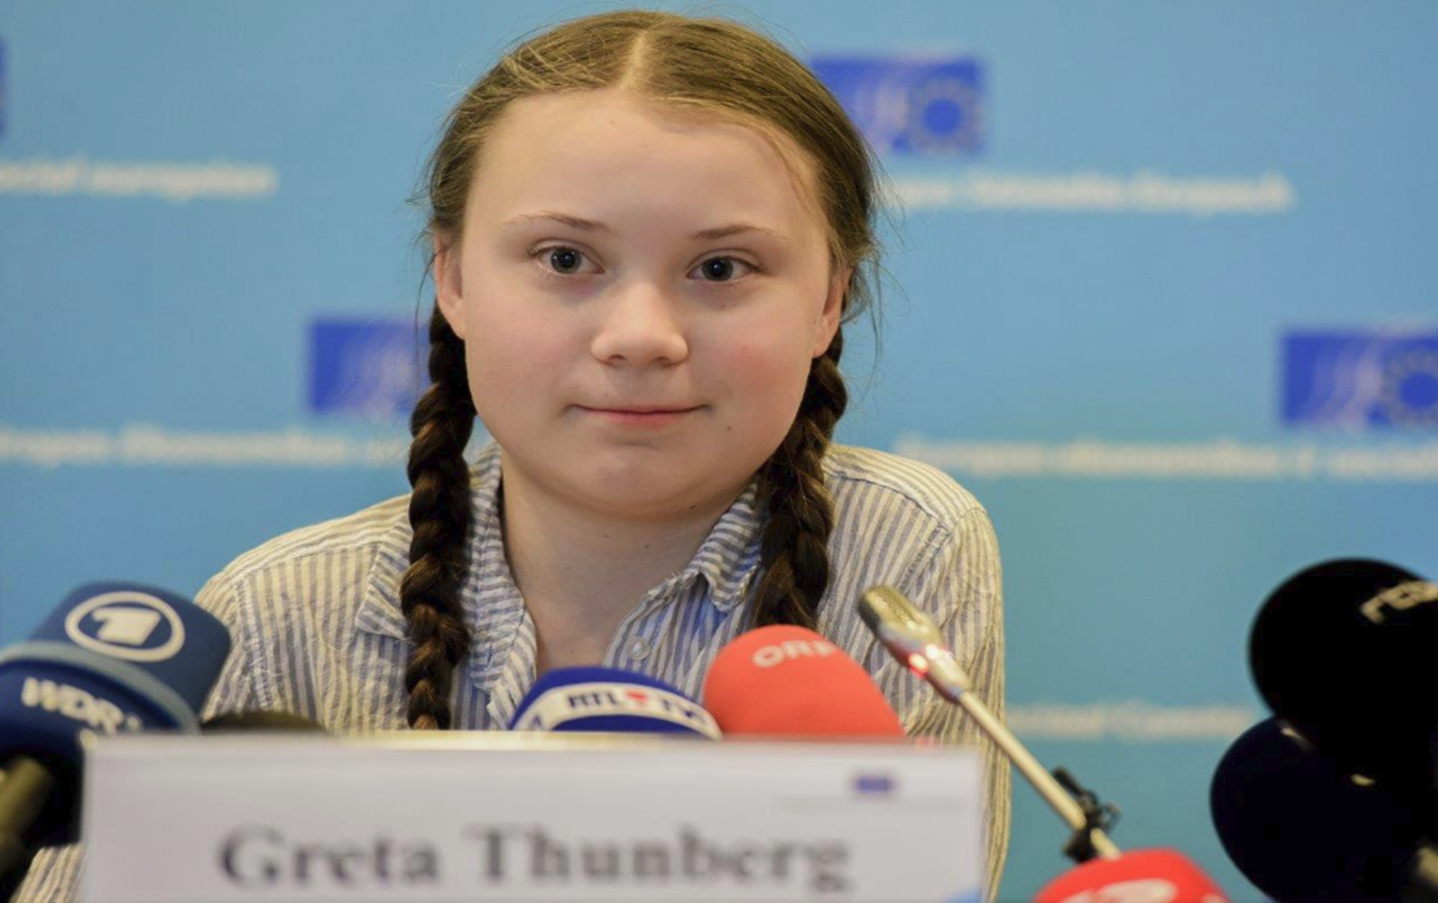 "Nuestra casa se desmorona, el futuro está en sus manos": Greta Thunberg